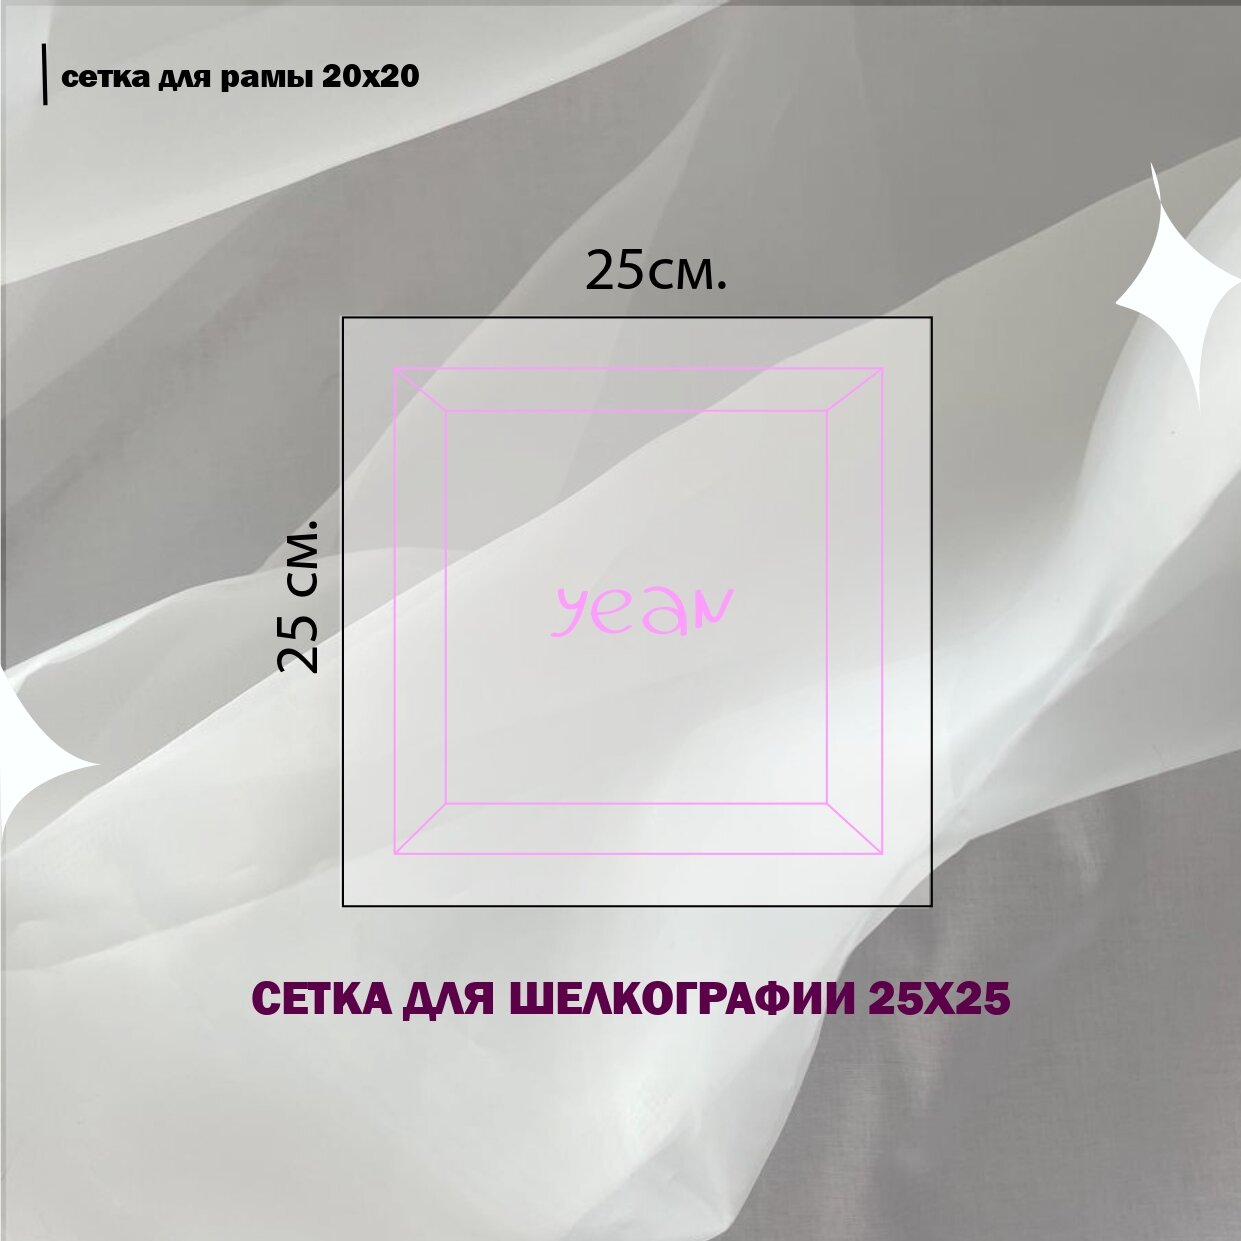 Сетка для Шелкографии 25x25